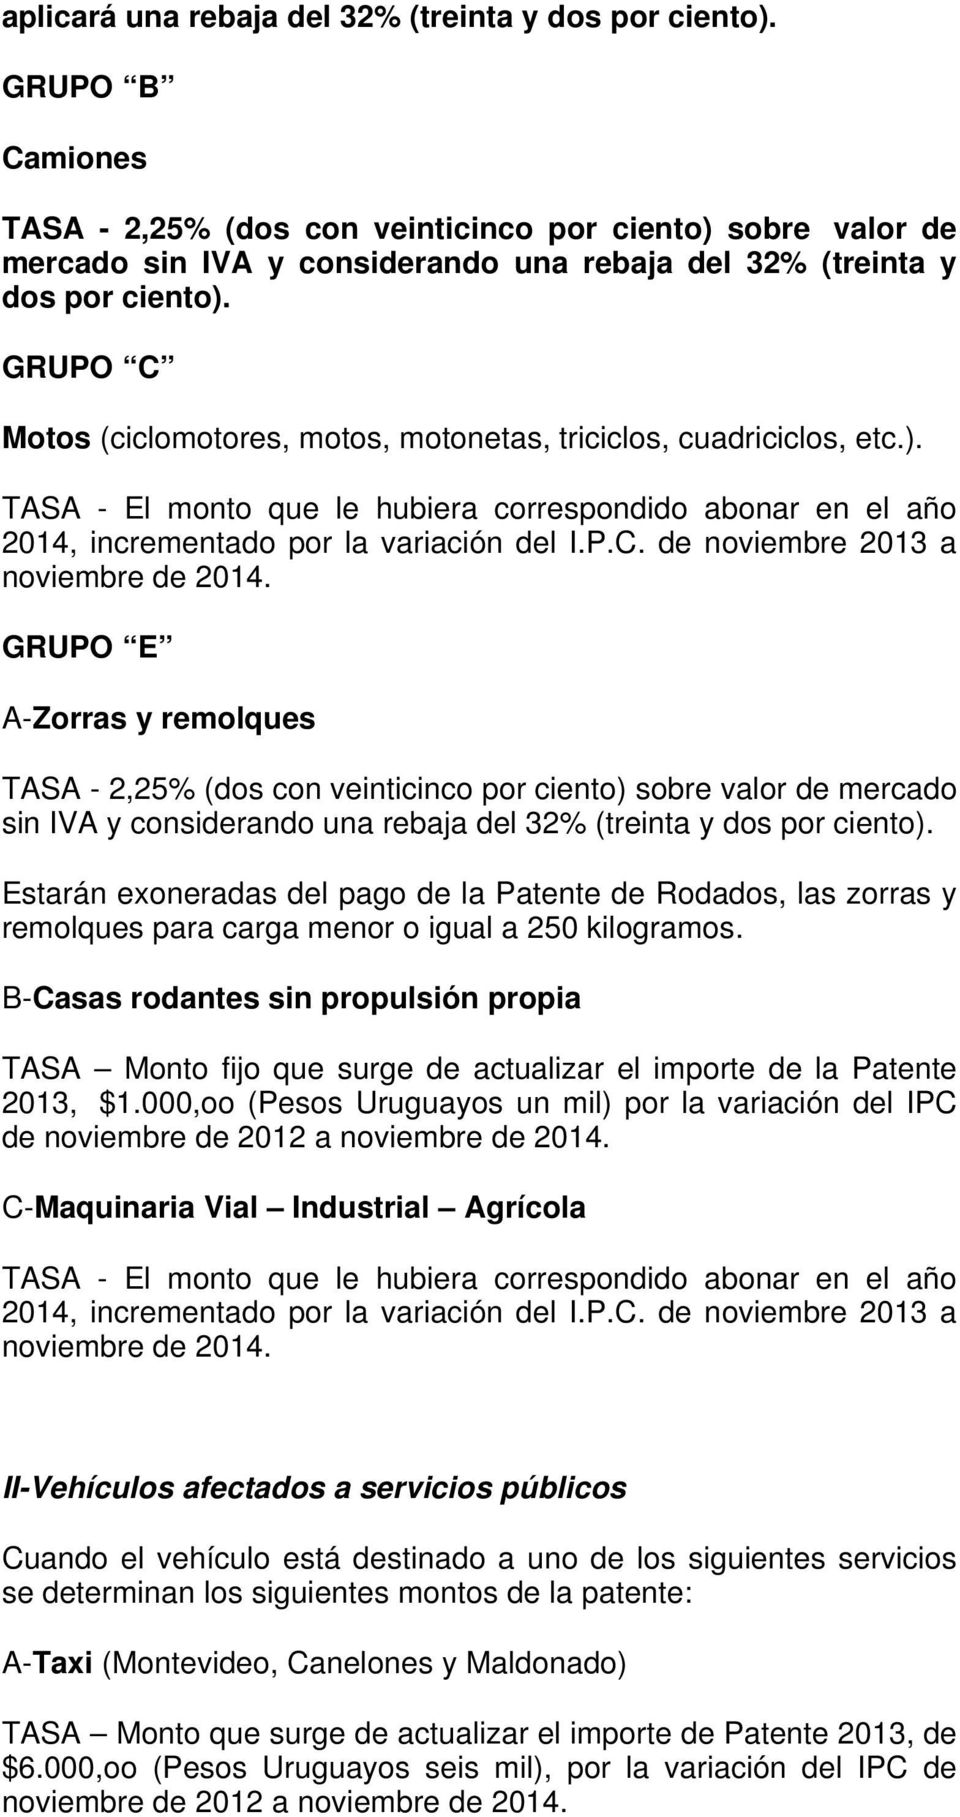 GRUPO C Motos (ciclomotores, motos, motonetas, triciclos, cuadriciclos, etc.). TASA - El monto que le hubiera correspondido abonar en el año 2014, incrementado por la variación del I.P.C. de noviembre 2013 a noviembre de 2014.